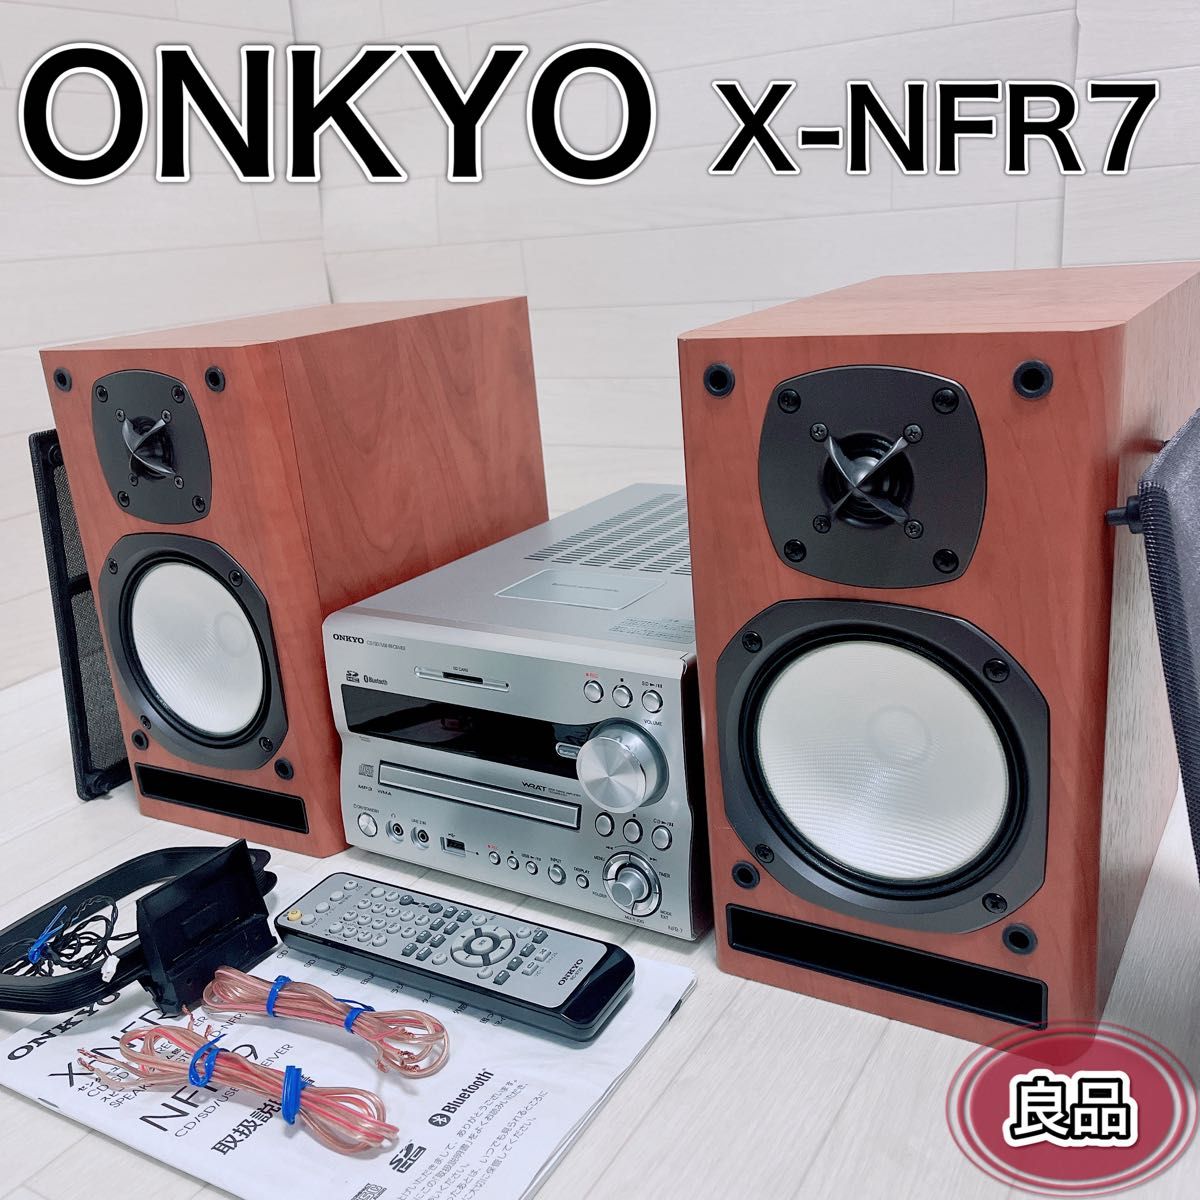 ONKYO/オンキョー コンポ X-NFR7 リモコン付き - オーディオ機器